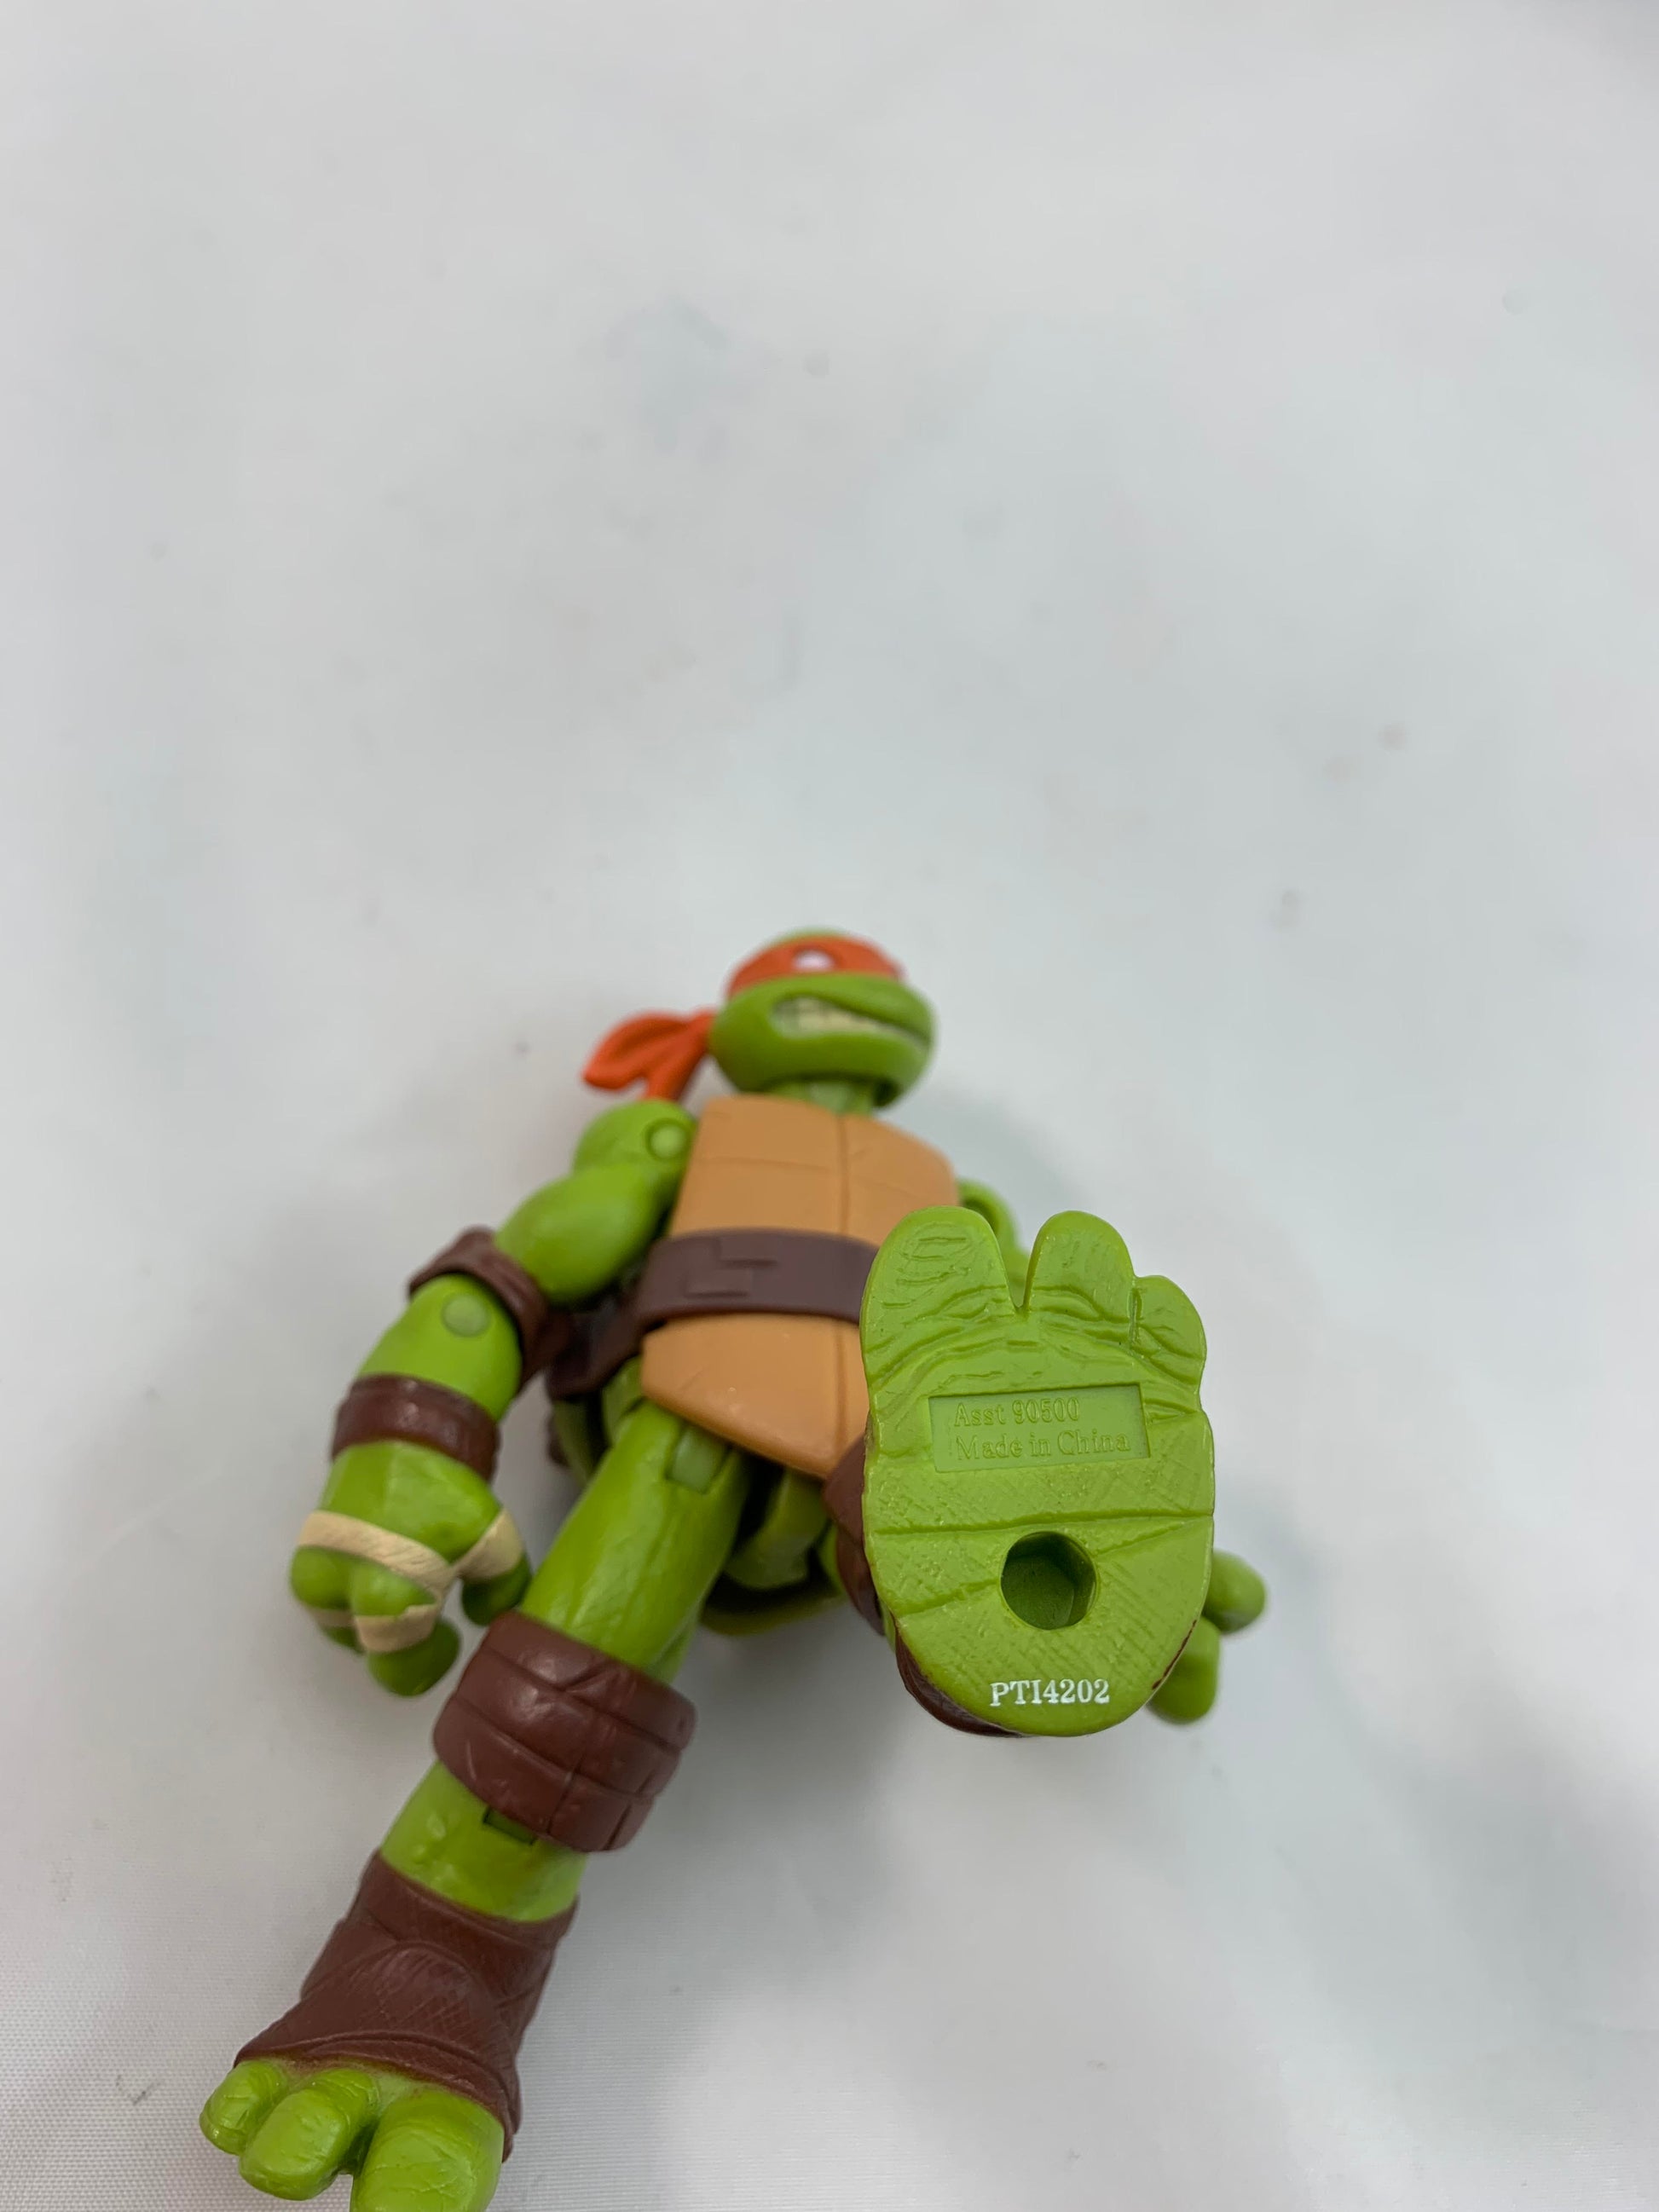 Teenage Mutant Ninja Turtles Michaelangelo Modern Figure Viacom Playmates 2012 - Loose